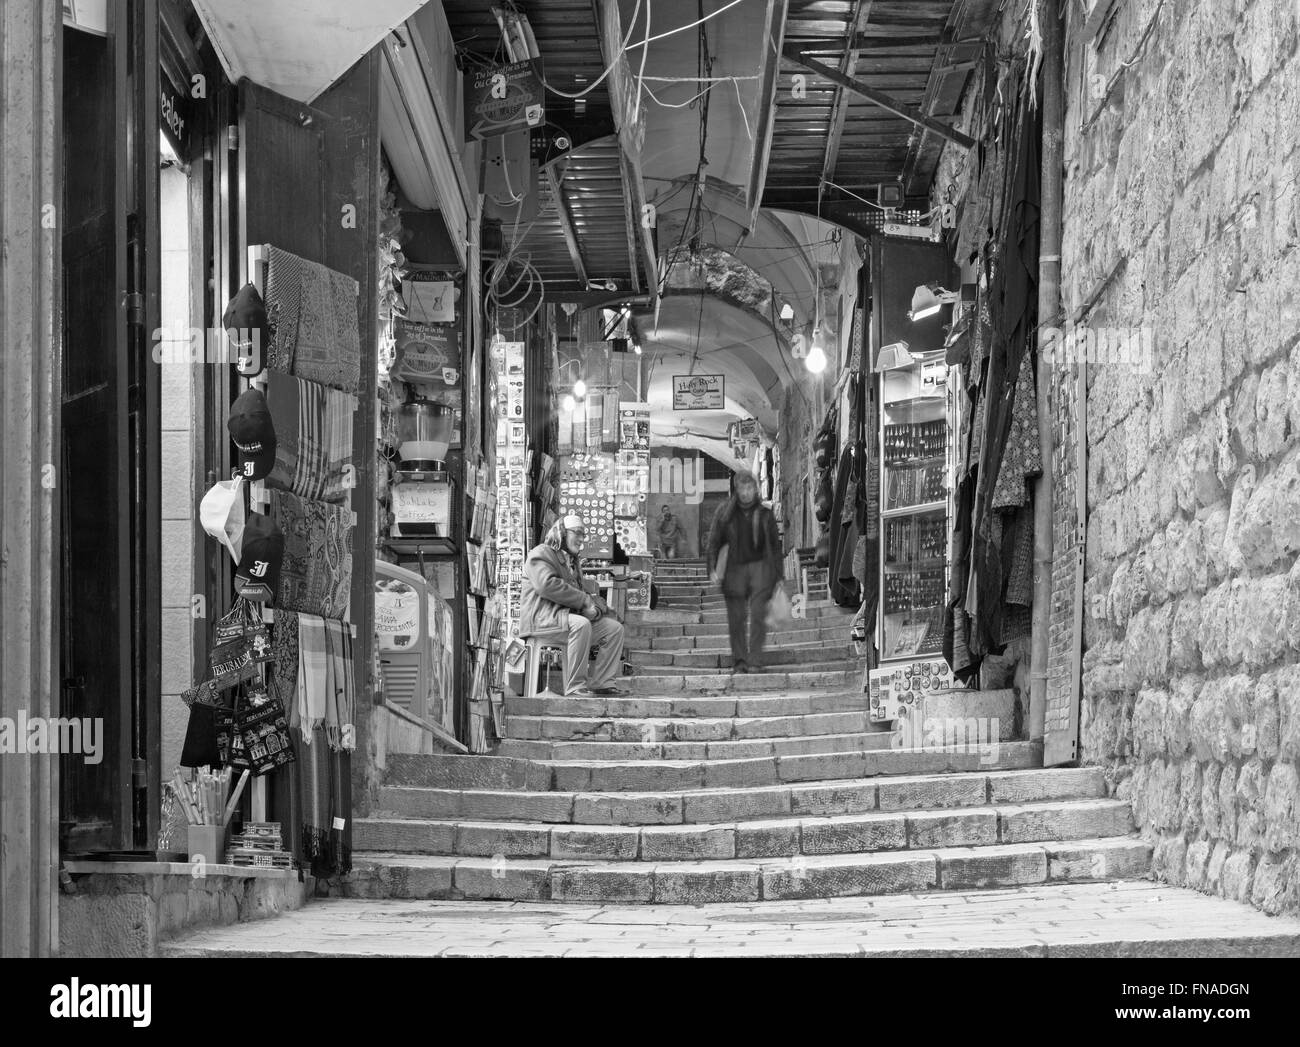 Gerusalemme, Israele - 4 Marzo 2015: Il Market street nella città vecchia in piena attività. Foto Stock